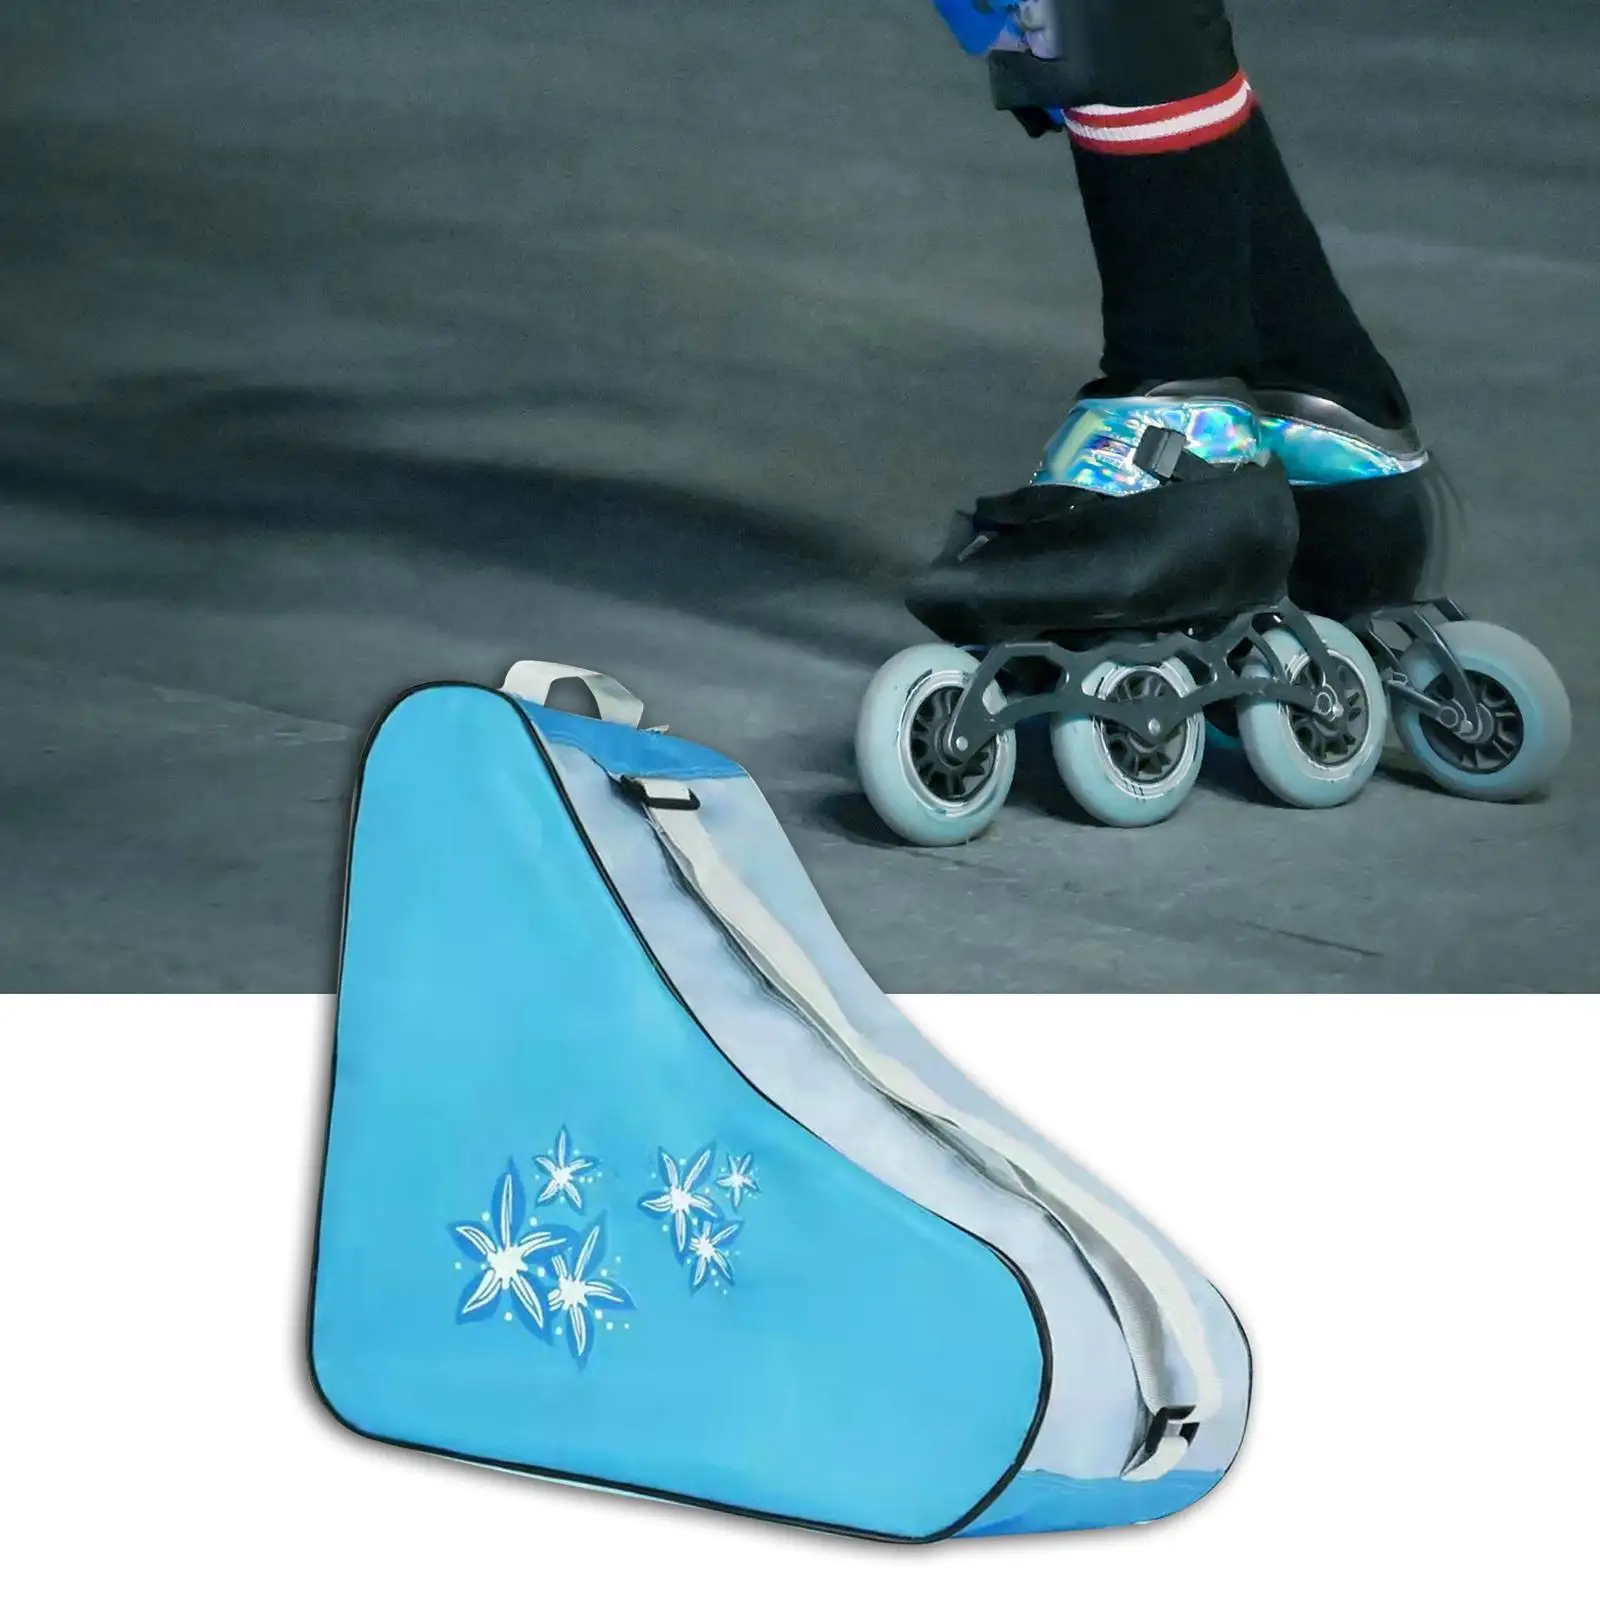 Roller Skate Bag Portable Adjustable Shoulder Strap Adults Kids Skate Carry Bag for Quad Skates Ice Hockey Skate Figure Skates